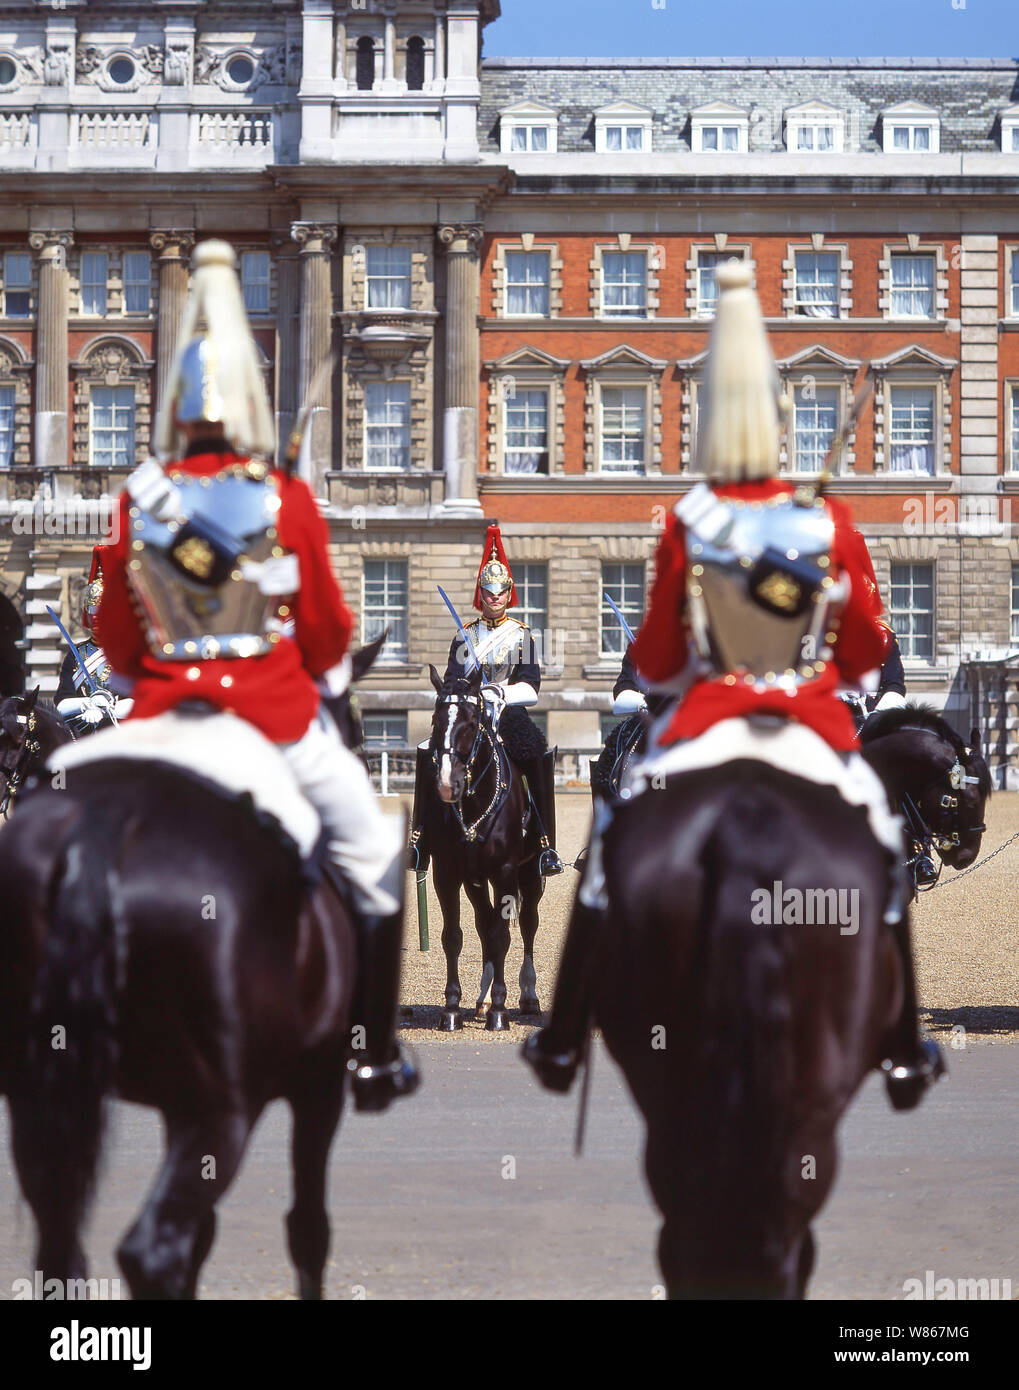 Cerimonia Del Cambio Della Guardia, Parata Delle Guardie A Cavallo, Whitehall, City Of Westminster, Greater London, Inghilterra, Regno Unito Foto Stock